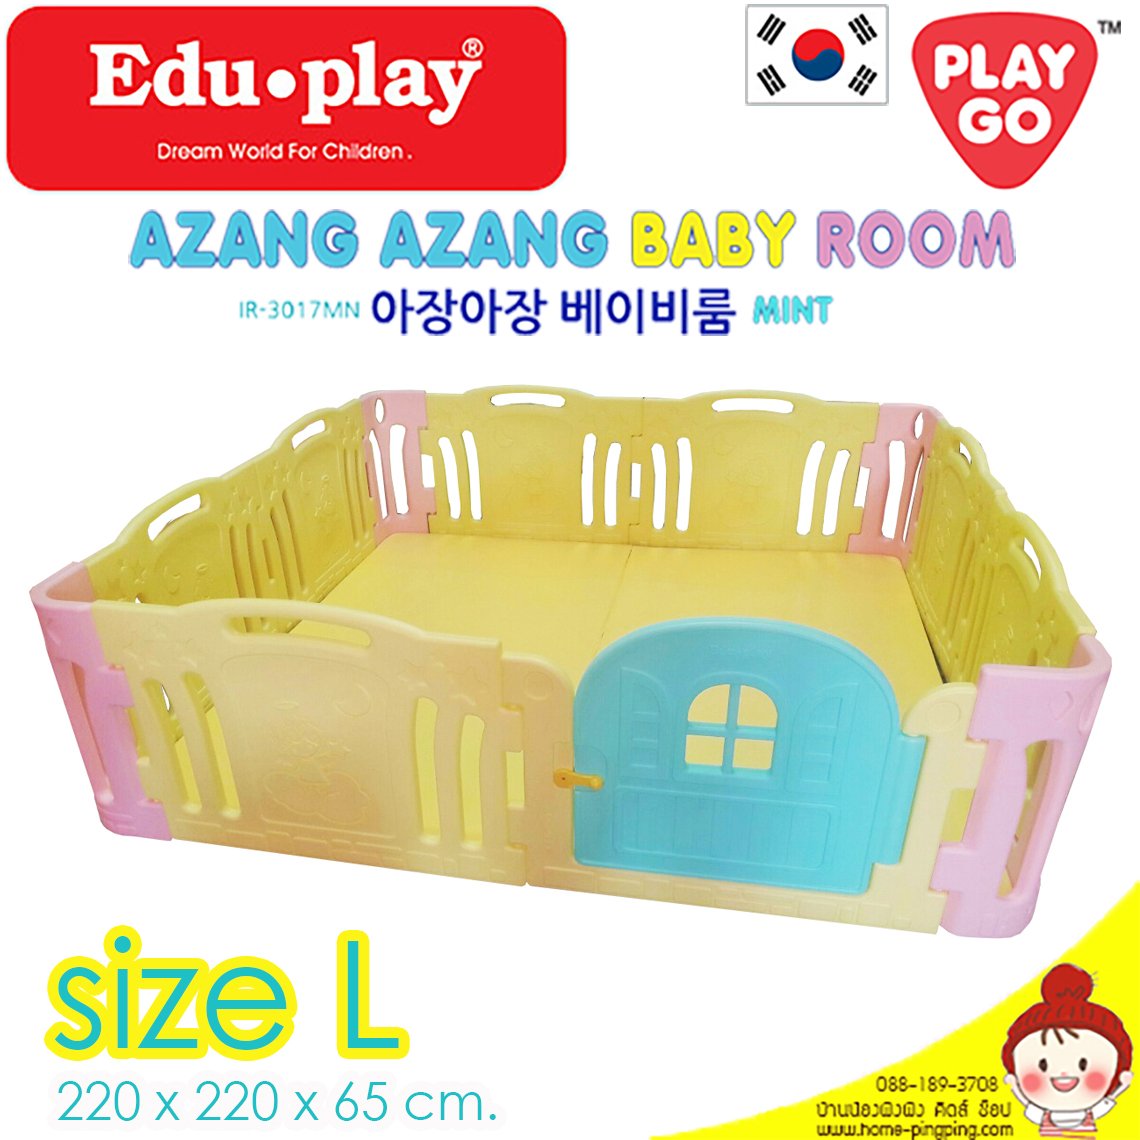 คอกกั้น Edu Play เกาหลี รุ่น Azang สีเหลือง [Sx2 =L-2door] ขนาด 220*220*65 ซม. ยี่ห้อ EDU Play